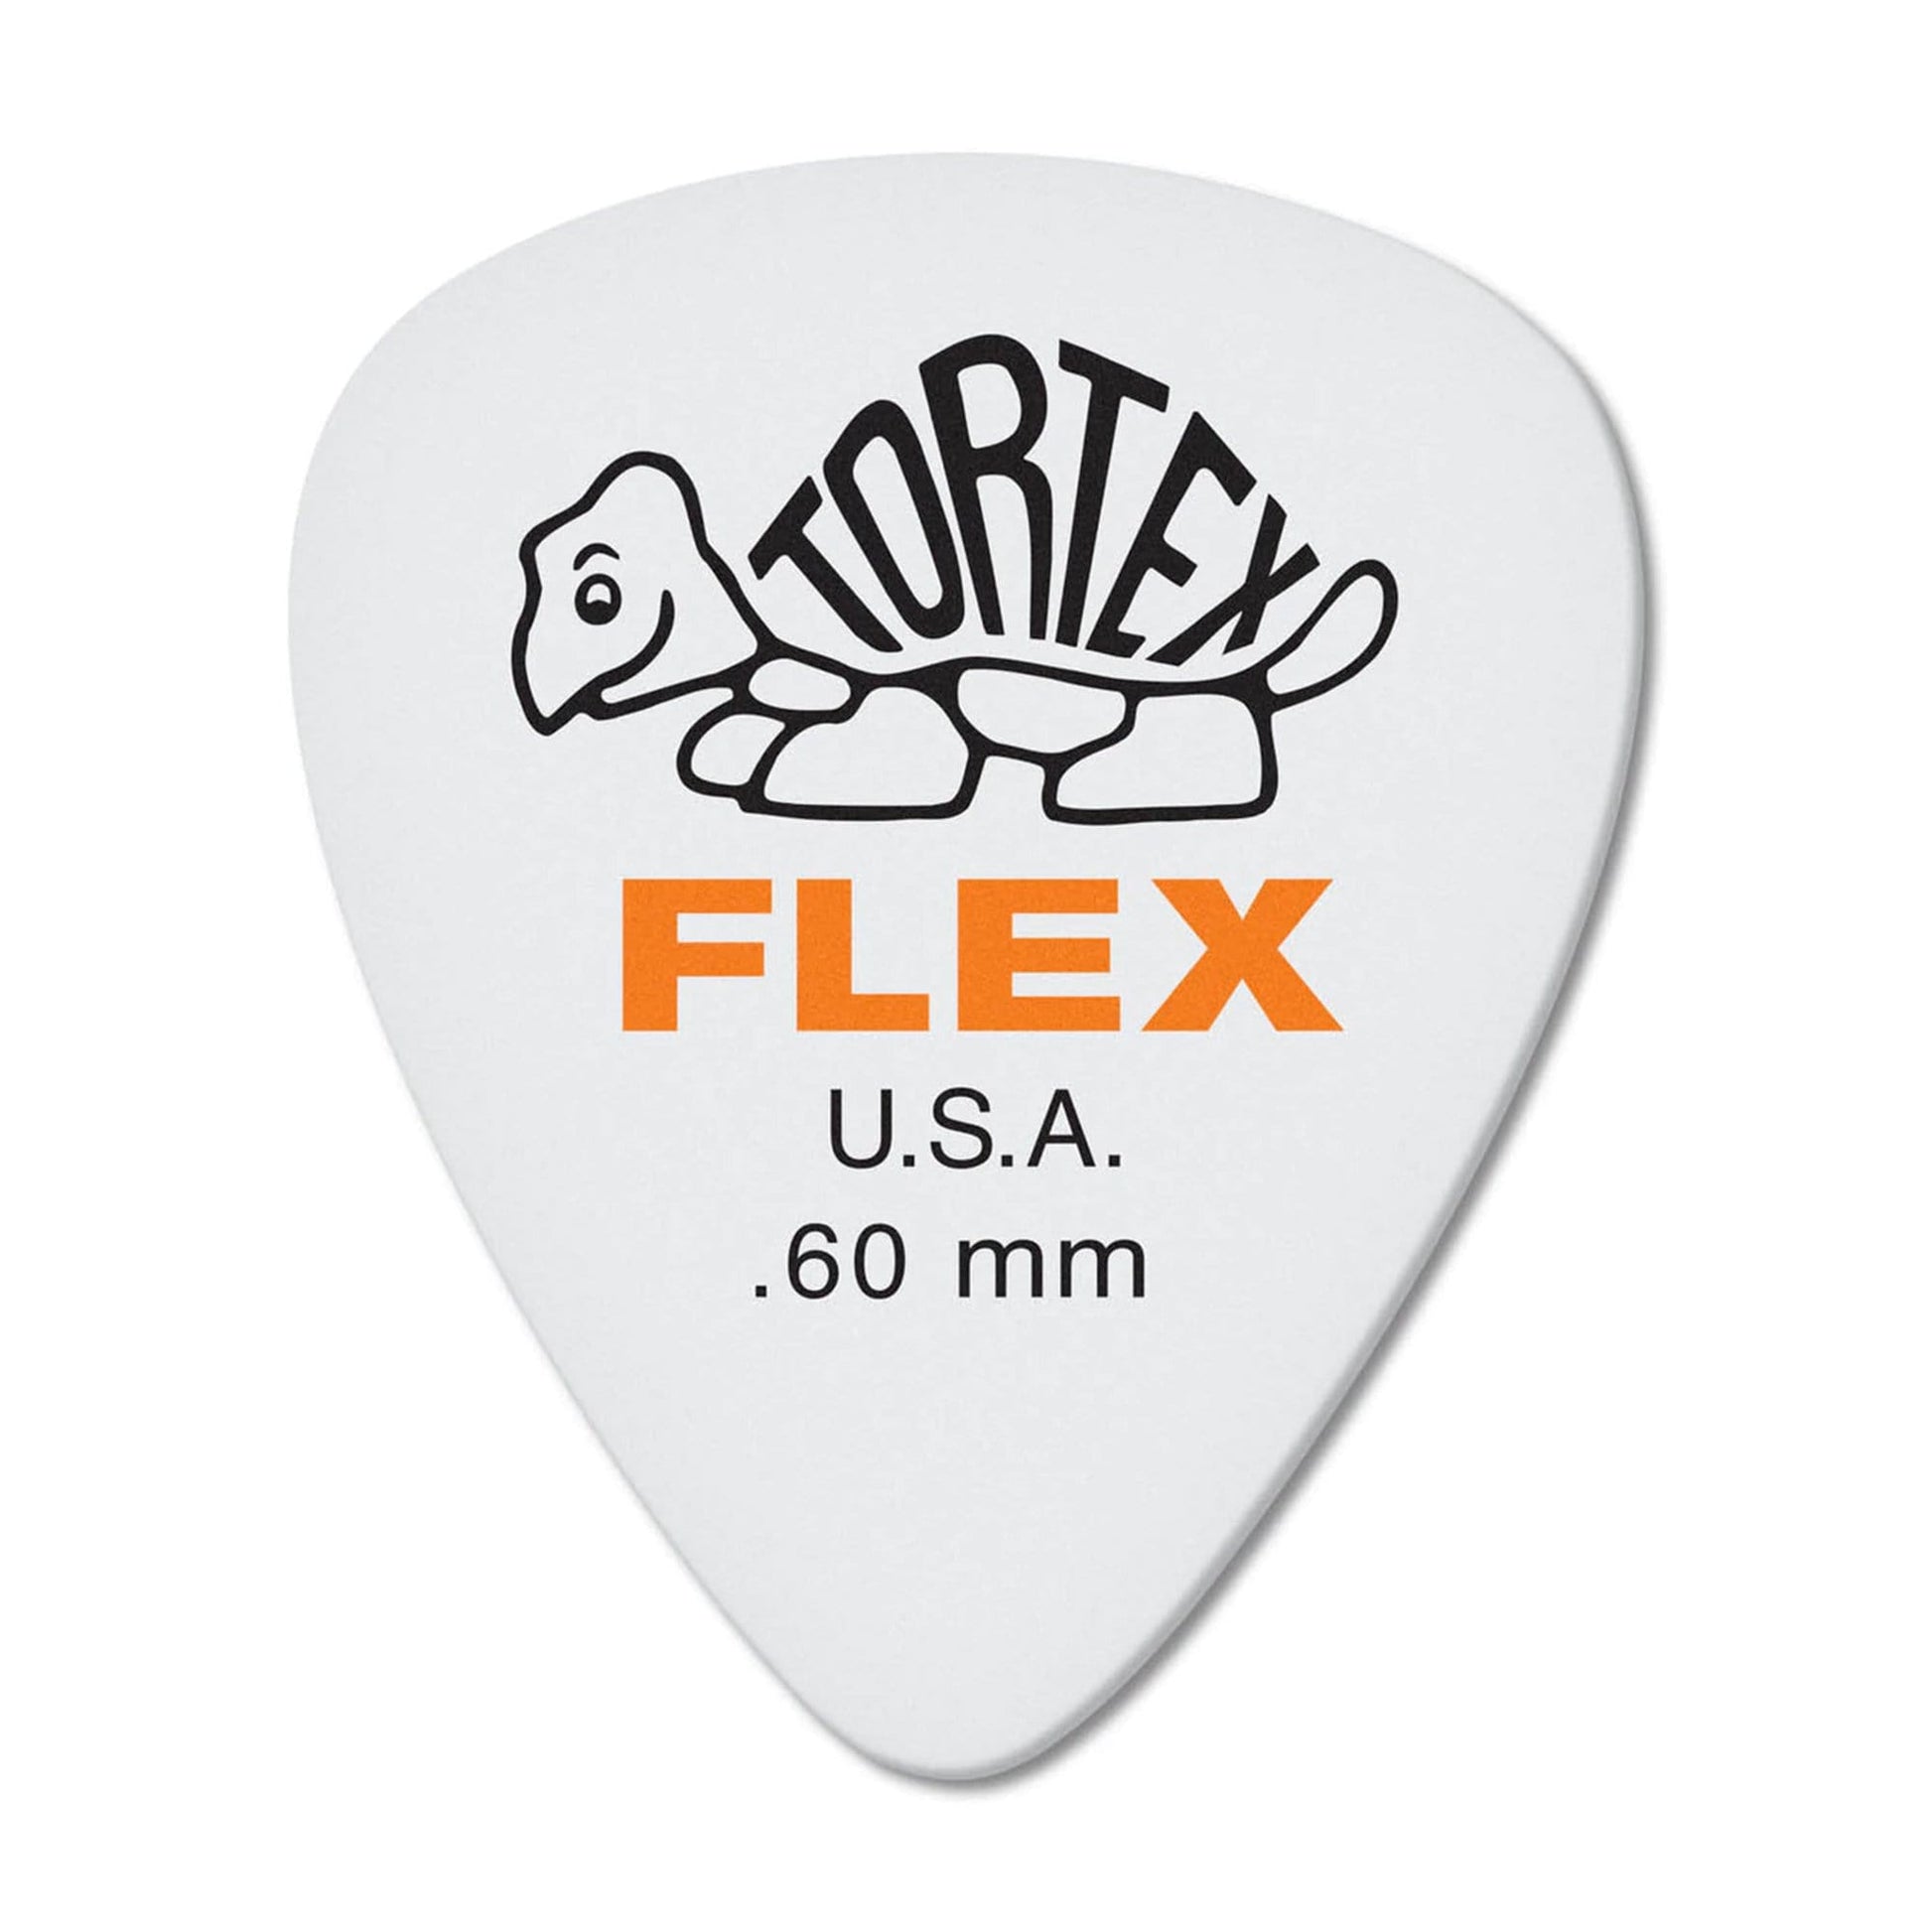 Dunlop Tortex Flex Standard Guitar Picks .60mm Player Pack 2 Pack (24) Bundle Accessories / Picks